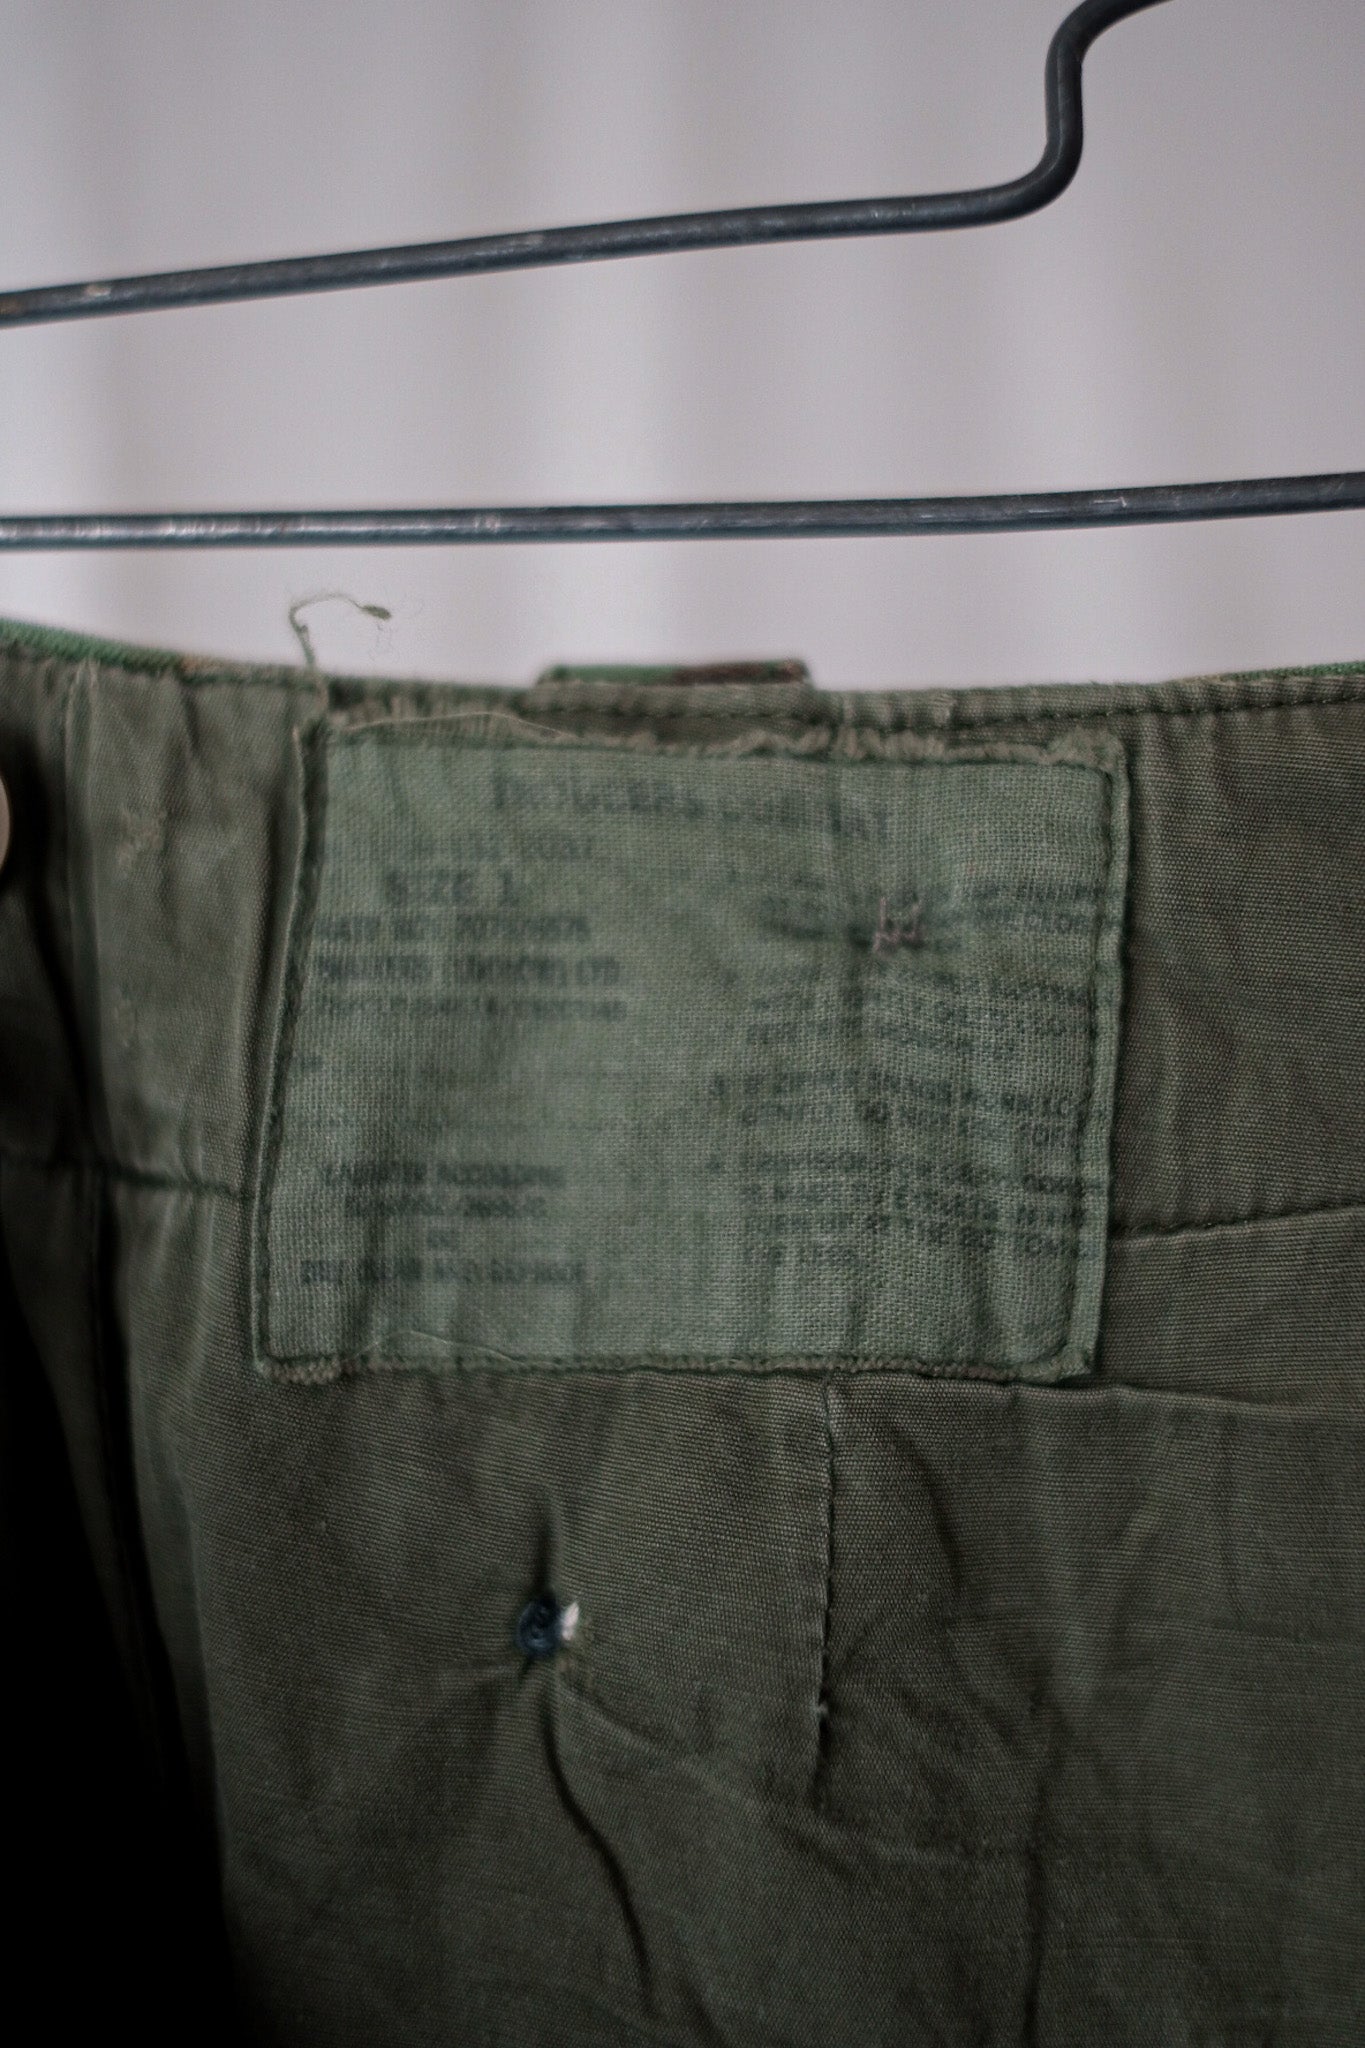 [〜60年代]英國軍隊1968年模式DPM迷彩褲子大小。1